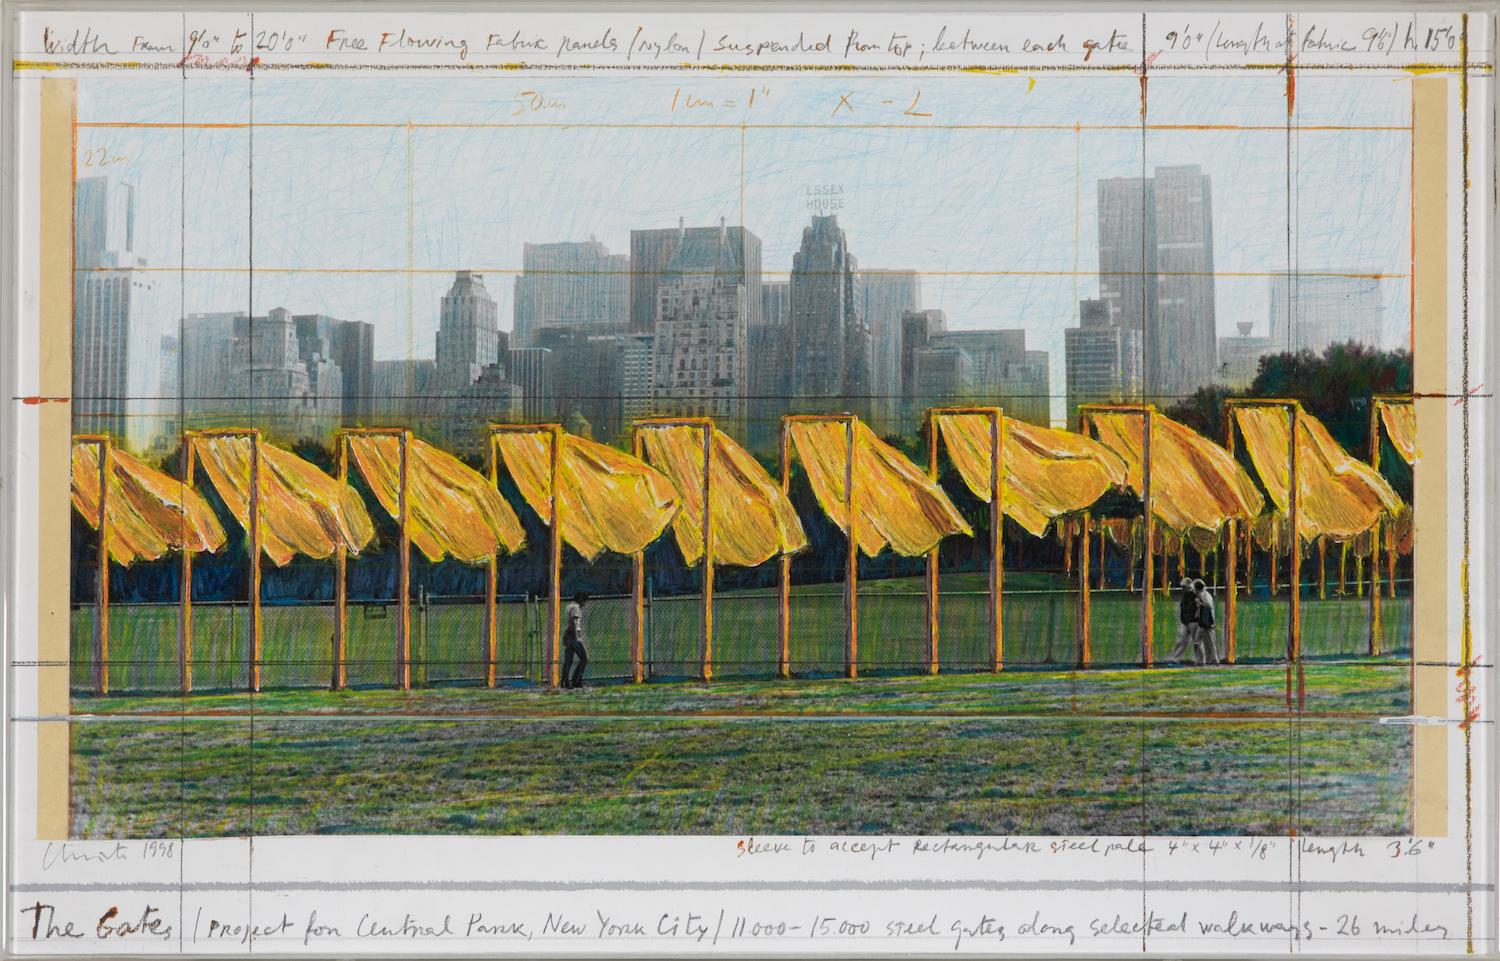 *LES ACHETEURS DU ROYAUME-UNI DEVRONT PAYER UN DROIT D'IMPORTATION SUPPLÉMENTAIRE DE 5 % EN PLUS DU PRIX INDIQUÉ CI-DESSUS.

The Gates (Projet pour Central Park, New York City) par Christo (1935-2020)
Collage, crayon, peinture émaillée, photographie